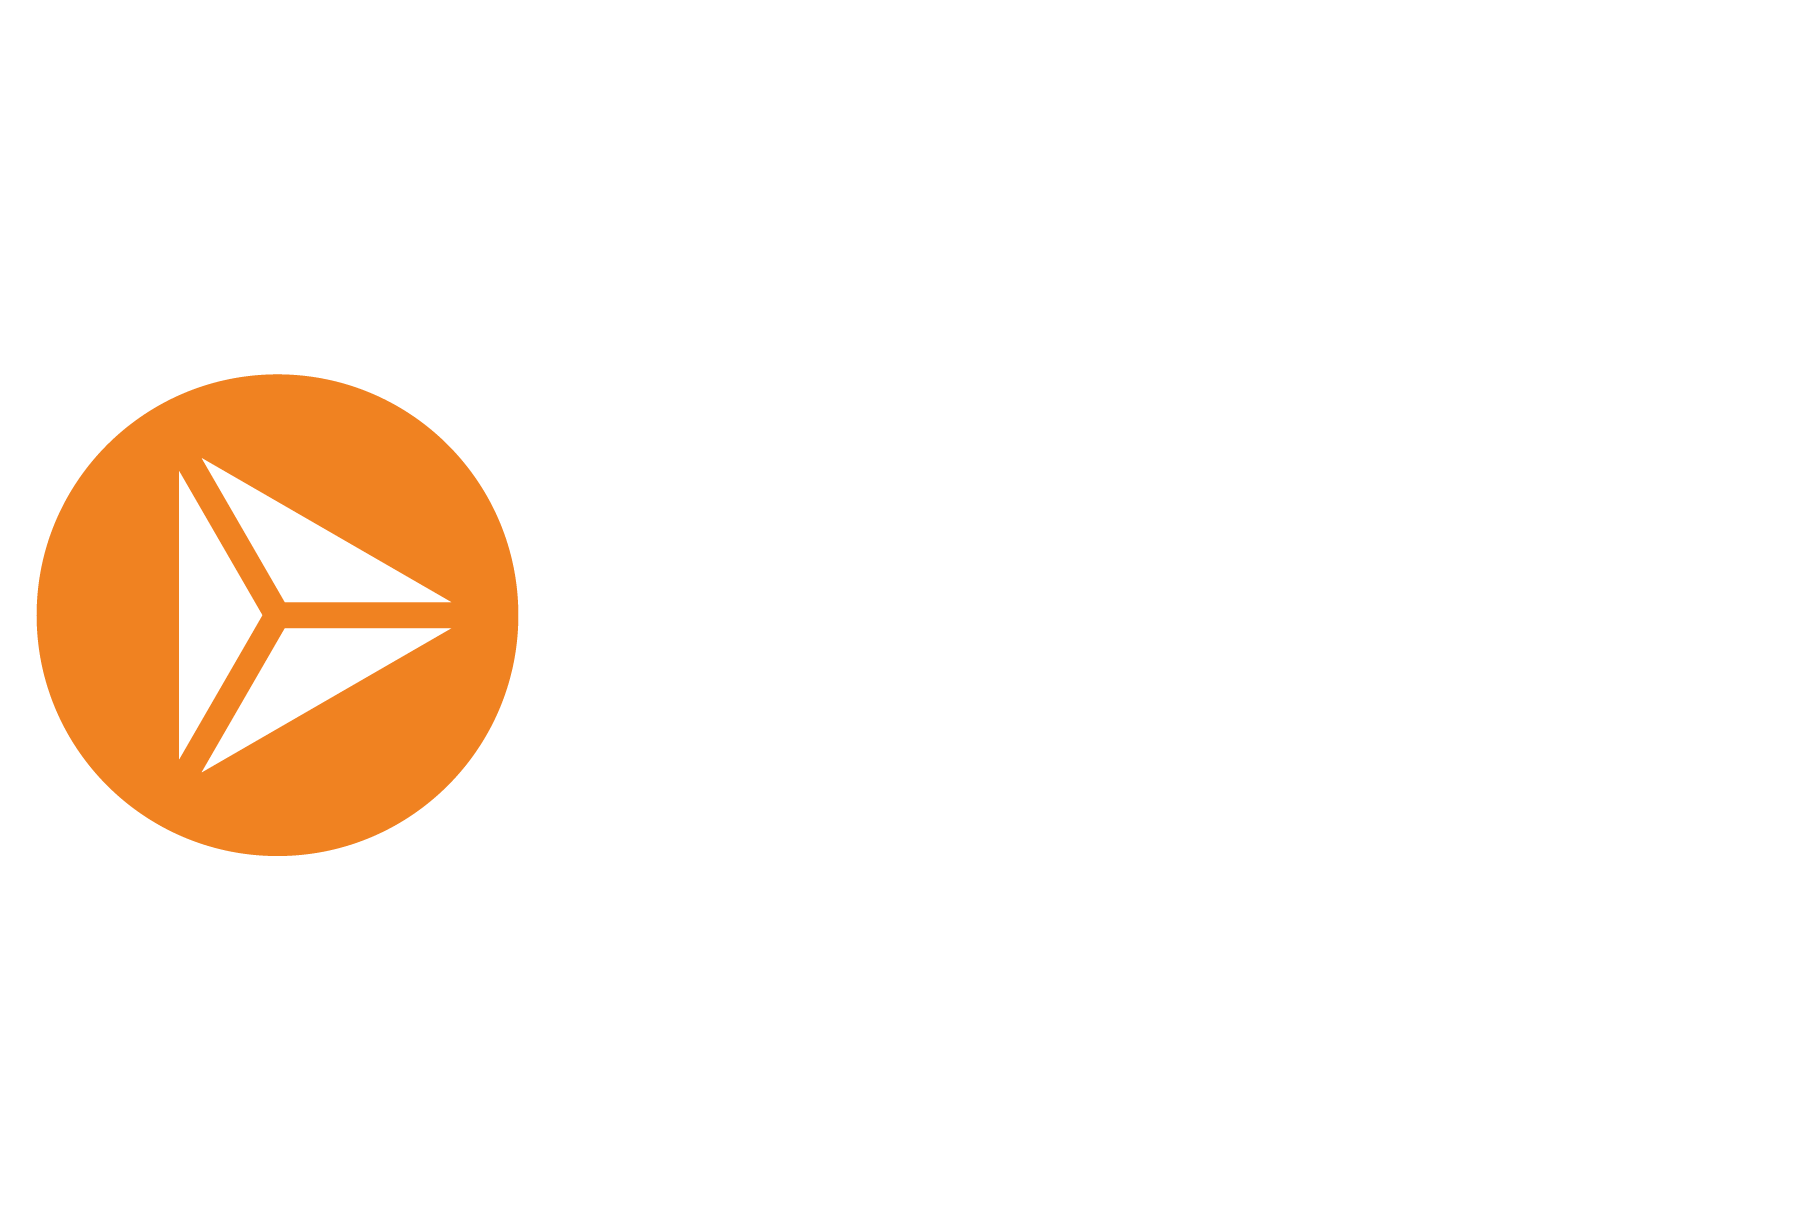 Review Marcom